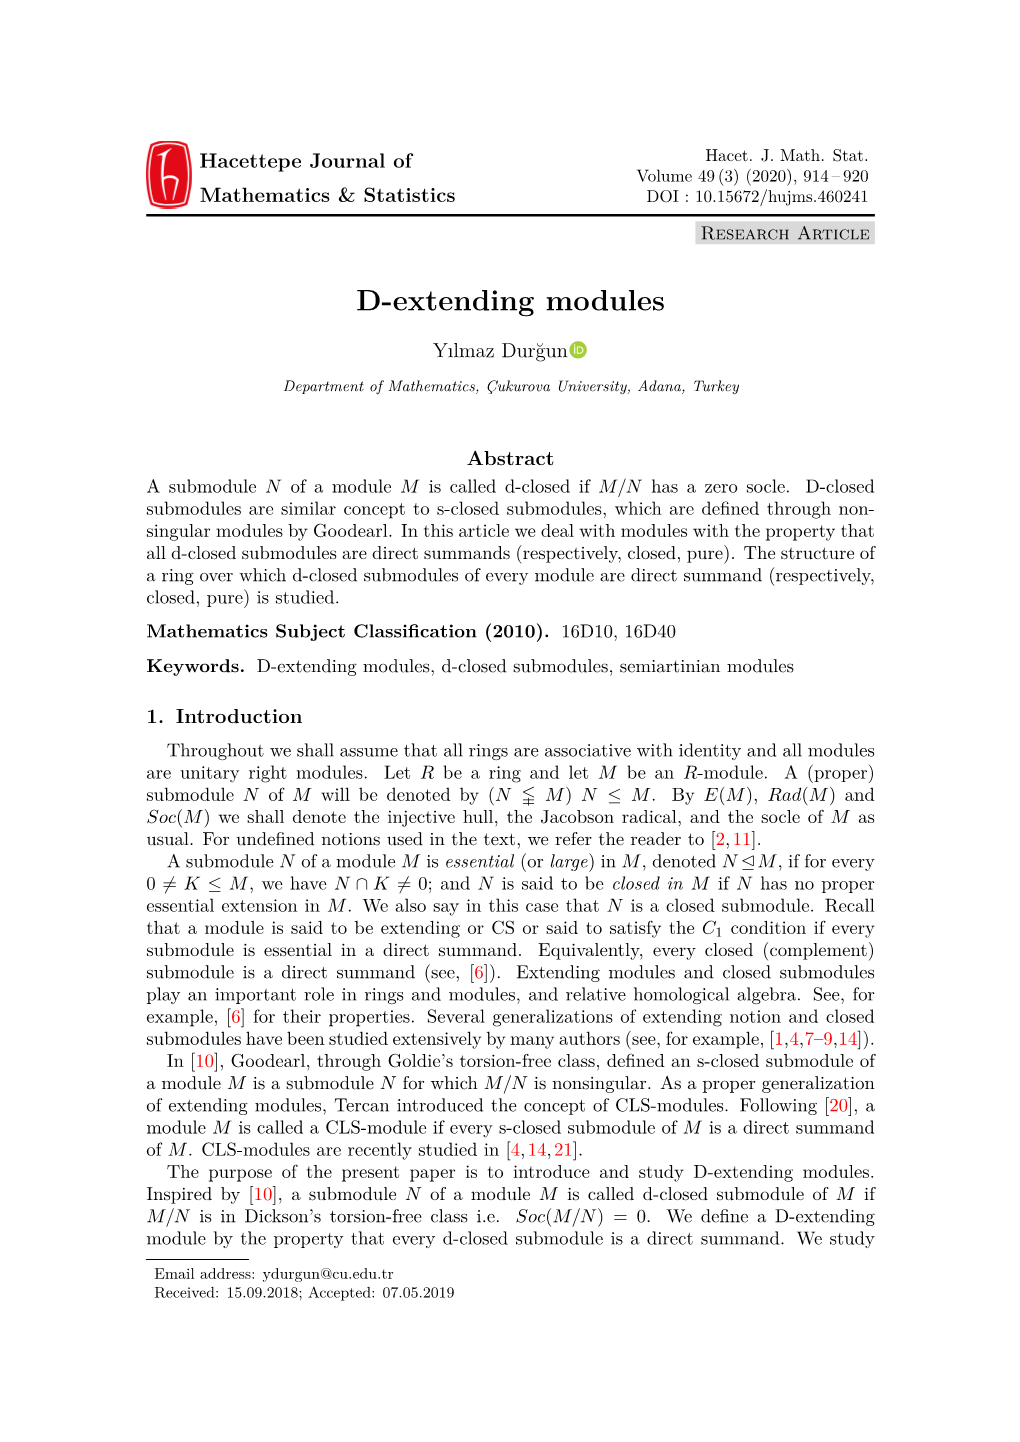 D-Extending Modules